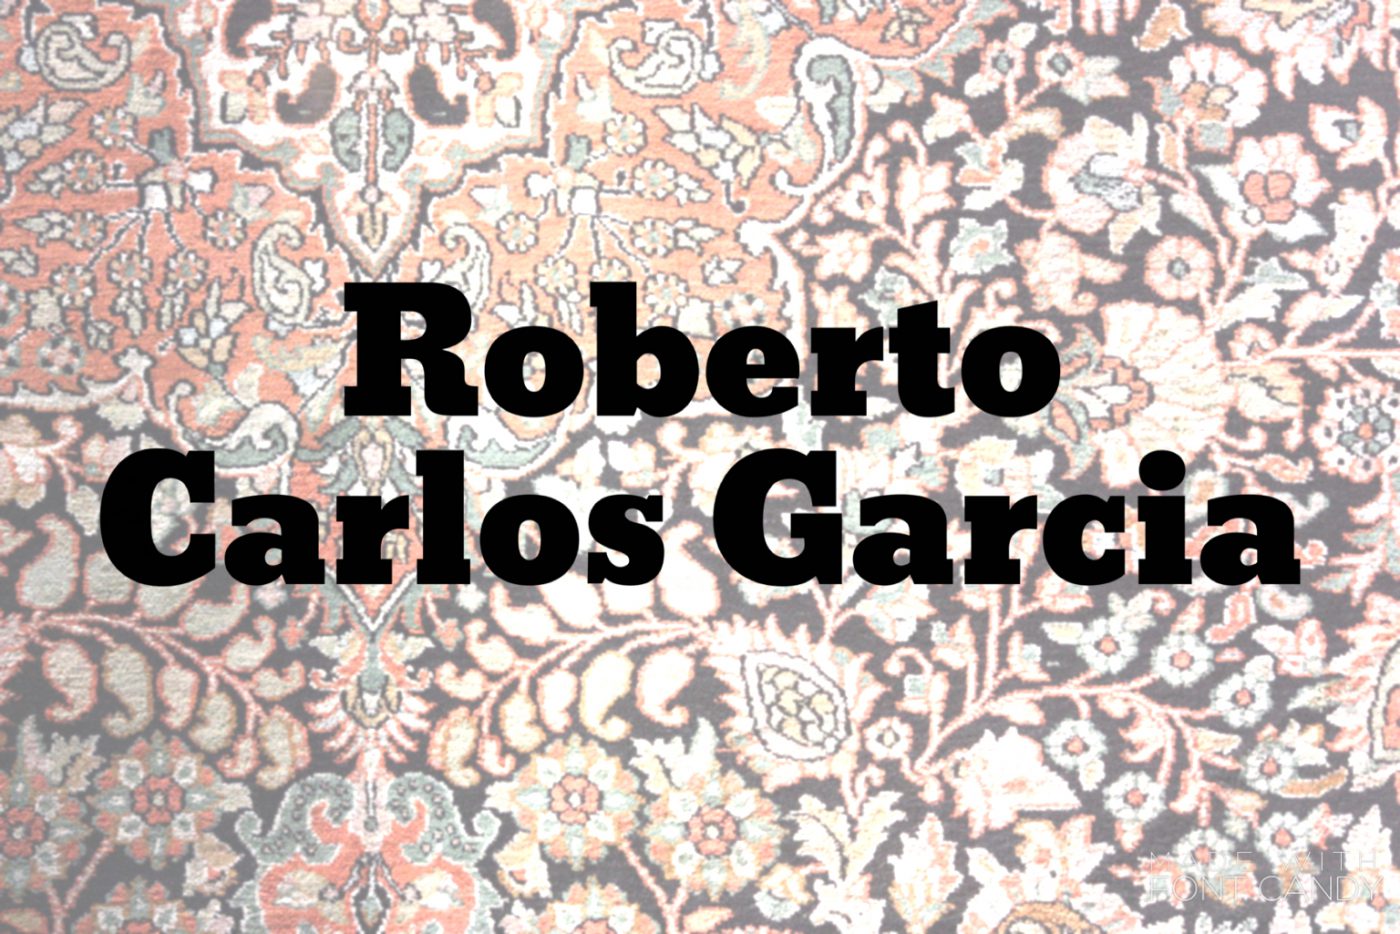 Roberto Carlos Garcia – Conversation No. 2